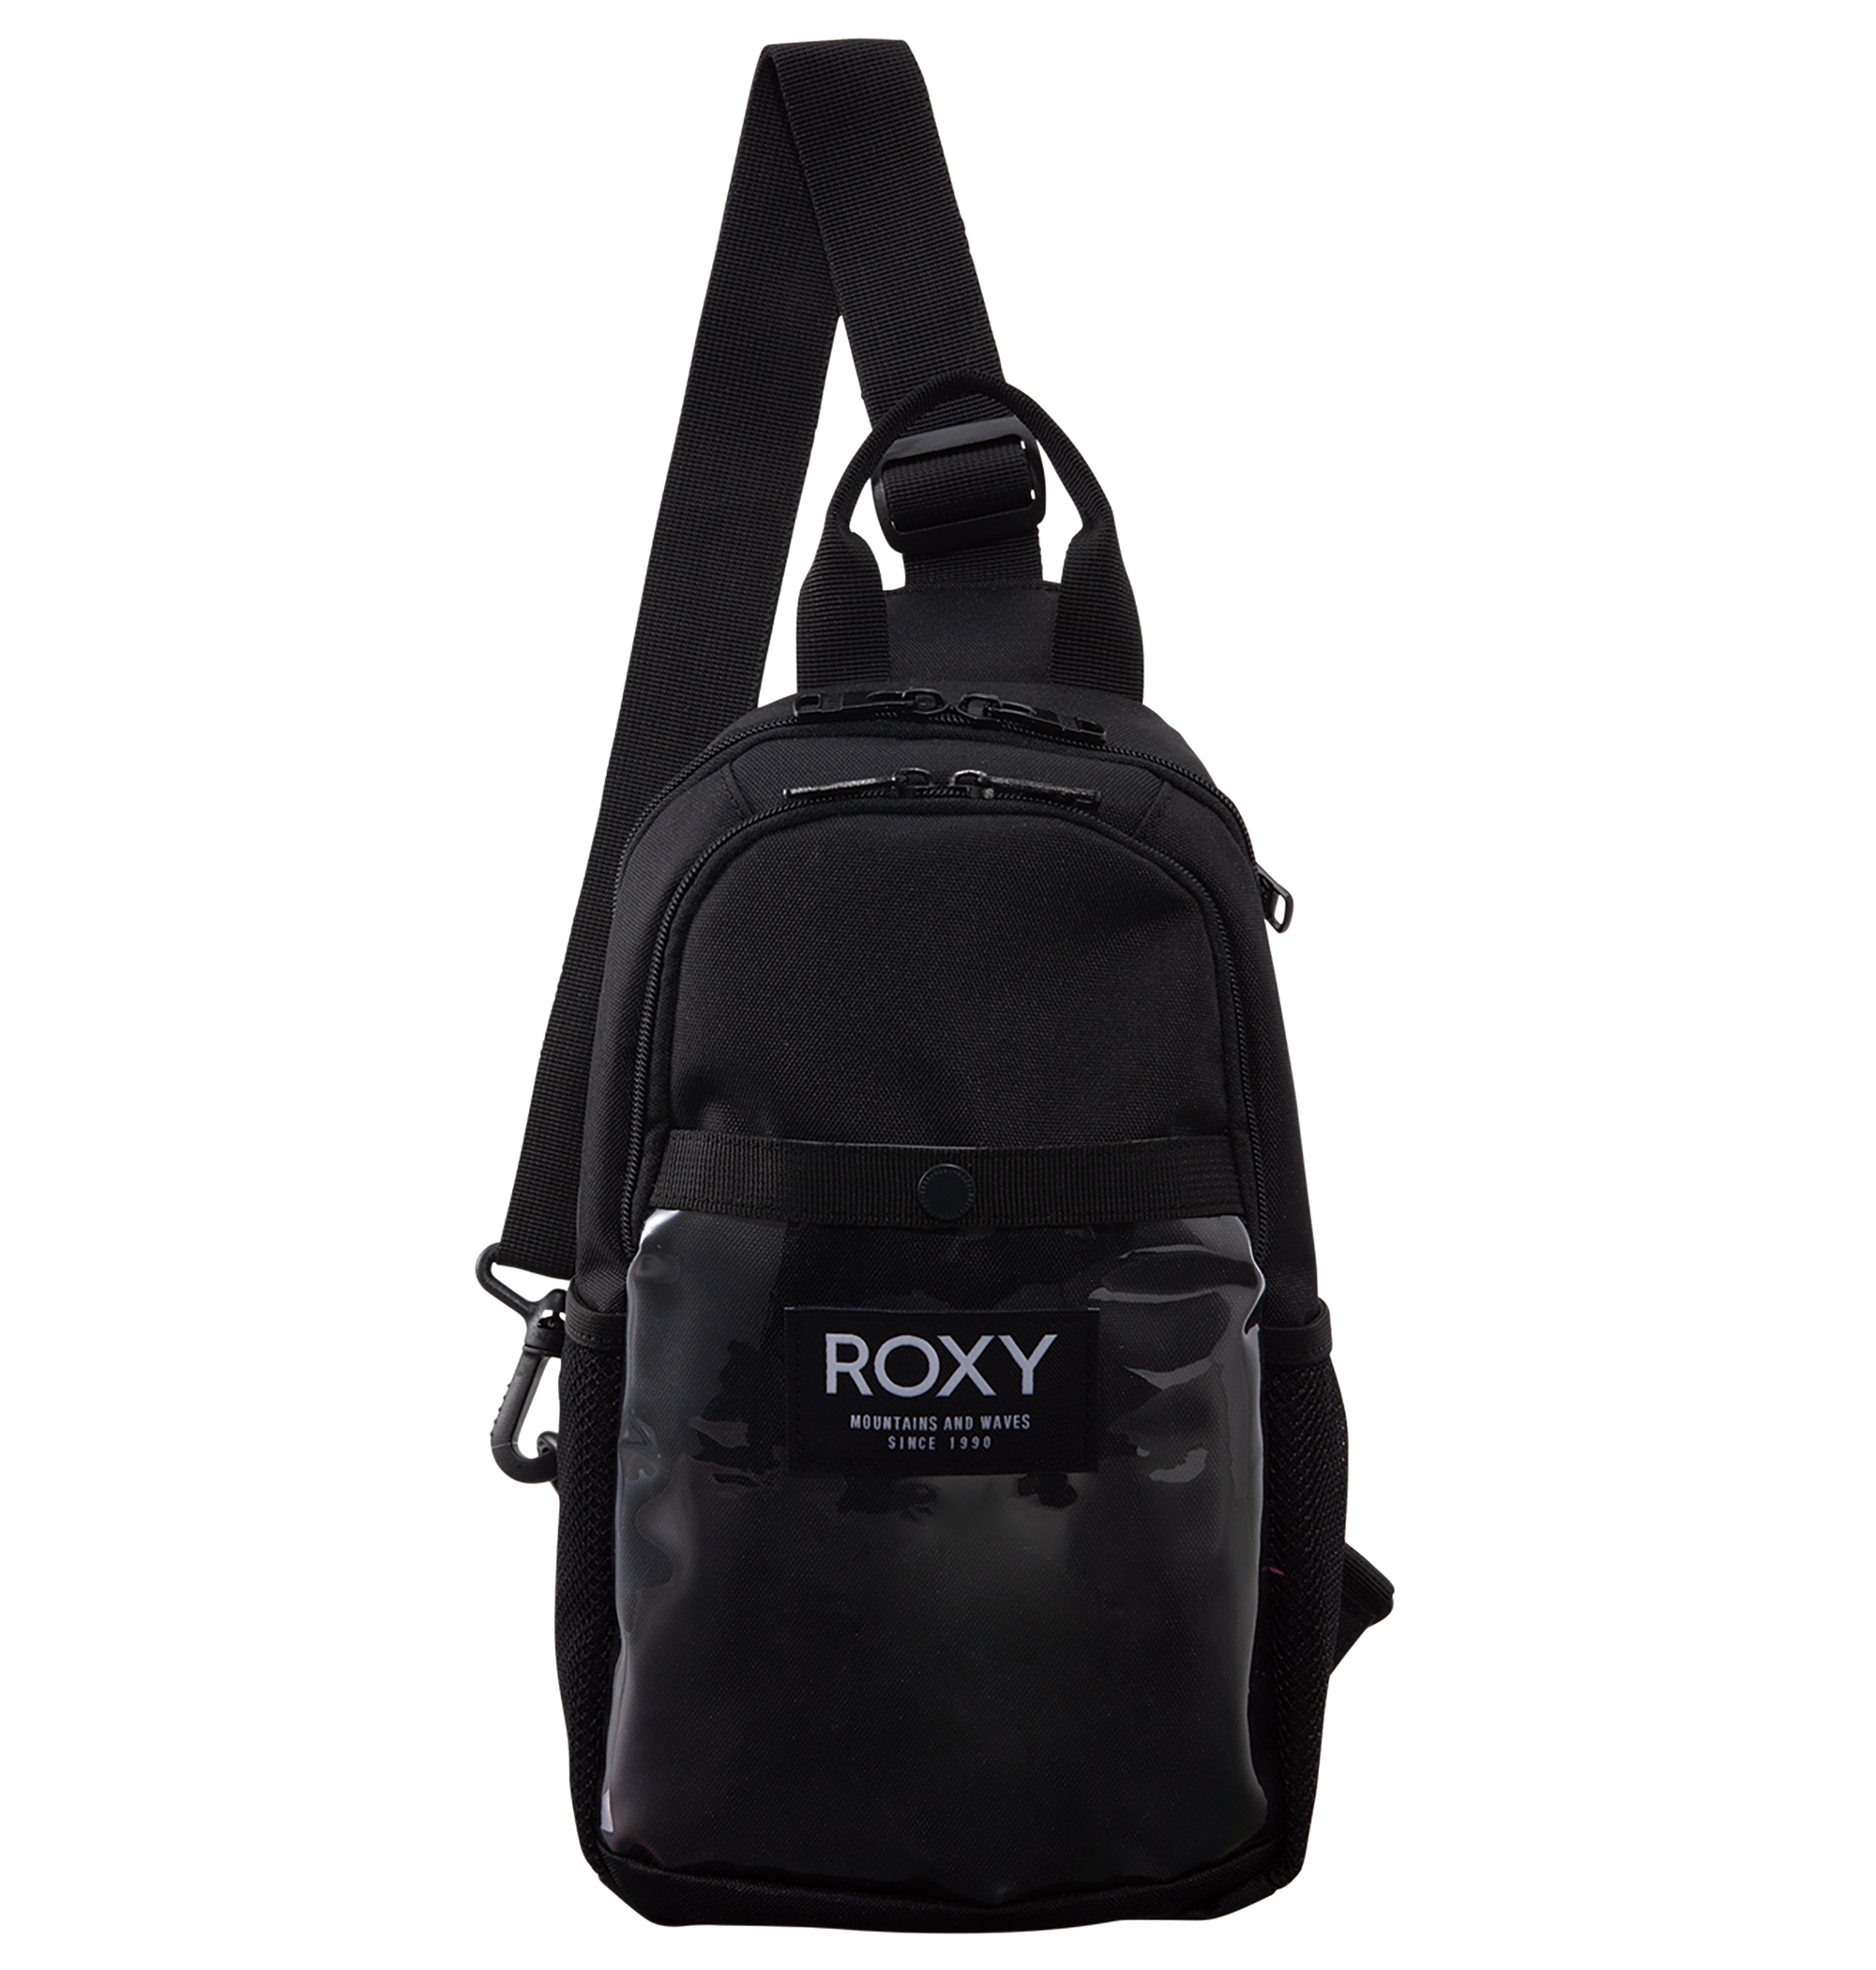 ＜Roxy＞BUTTER UP コンパクトなサイズながらマチやポケットがあり、安心感のある収納力が魅力的な斜めがけバッグ画像